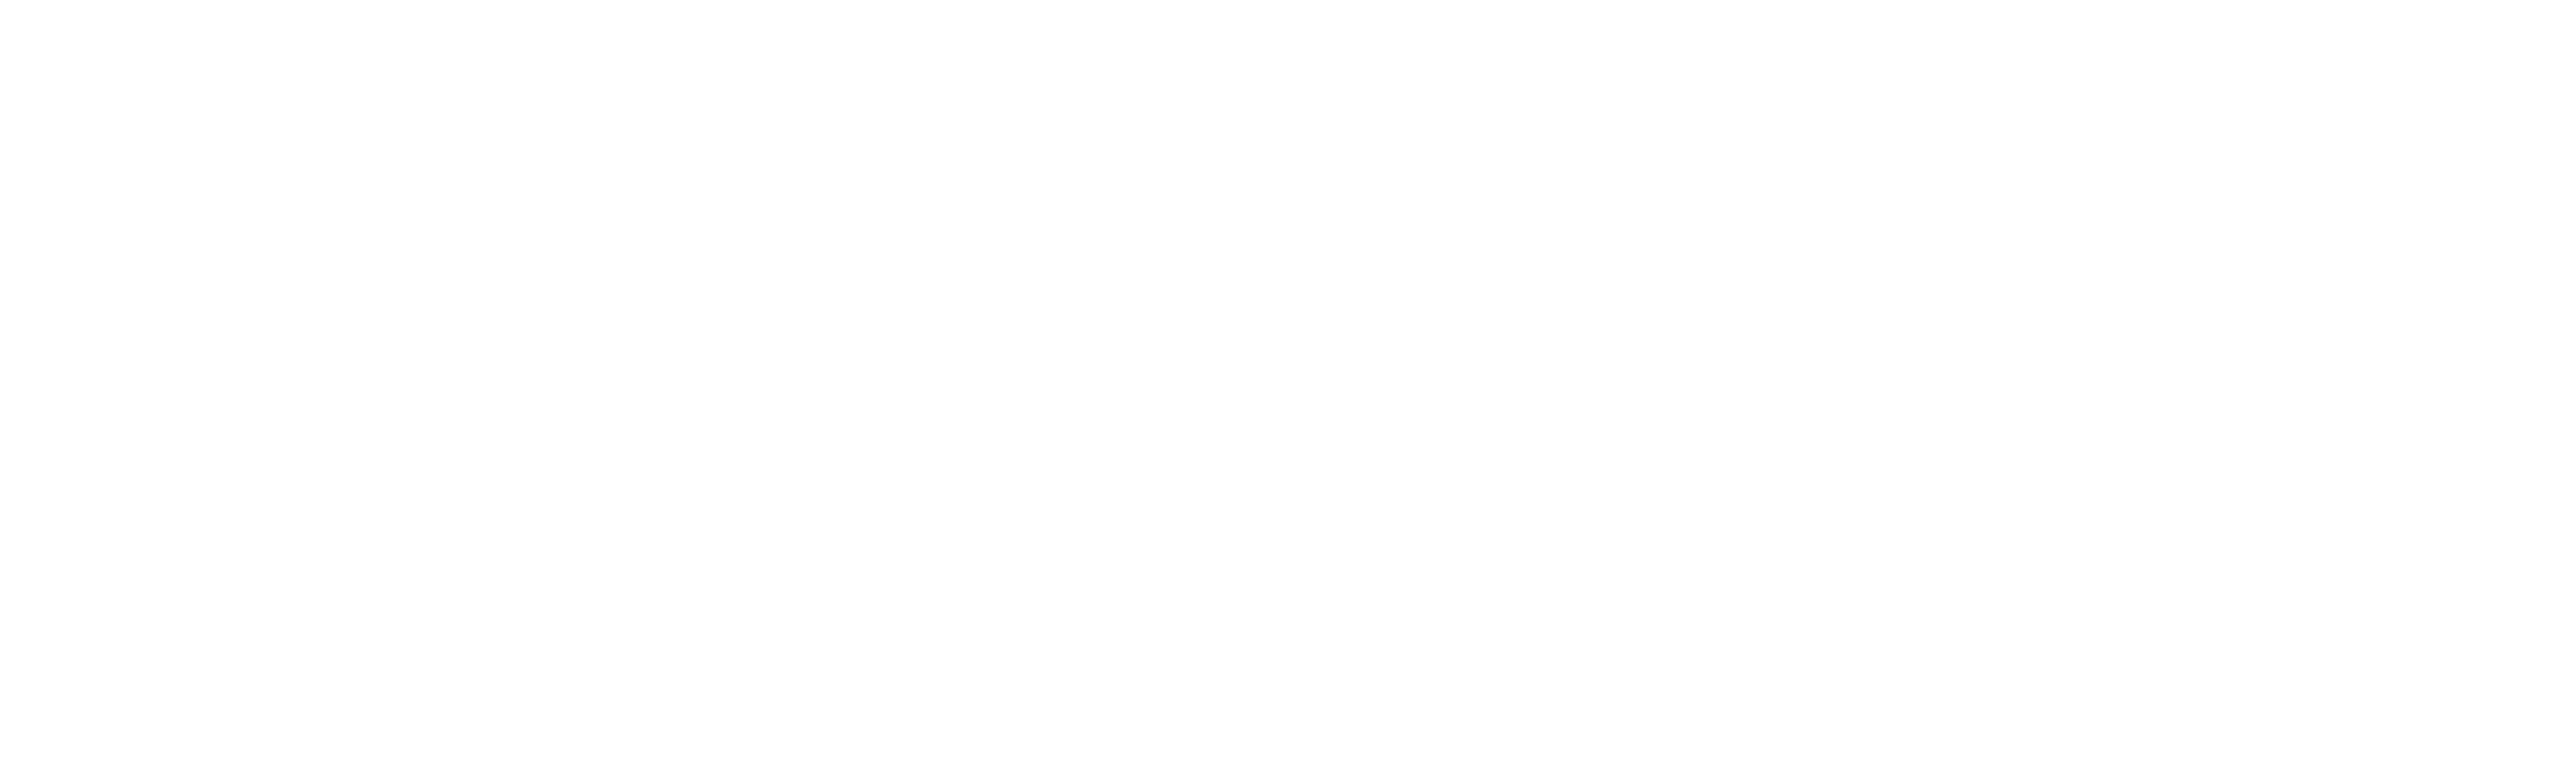 Borjak